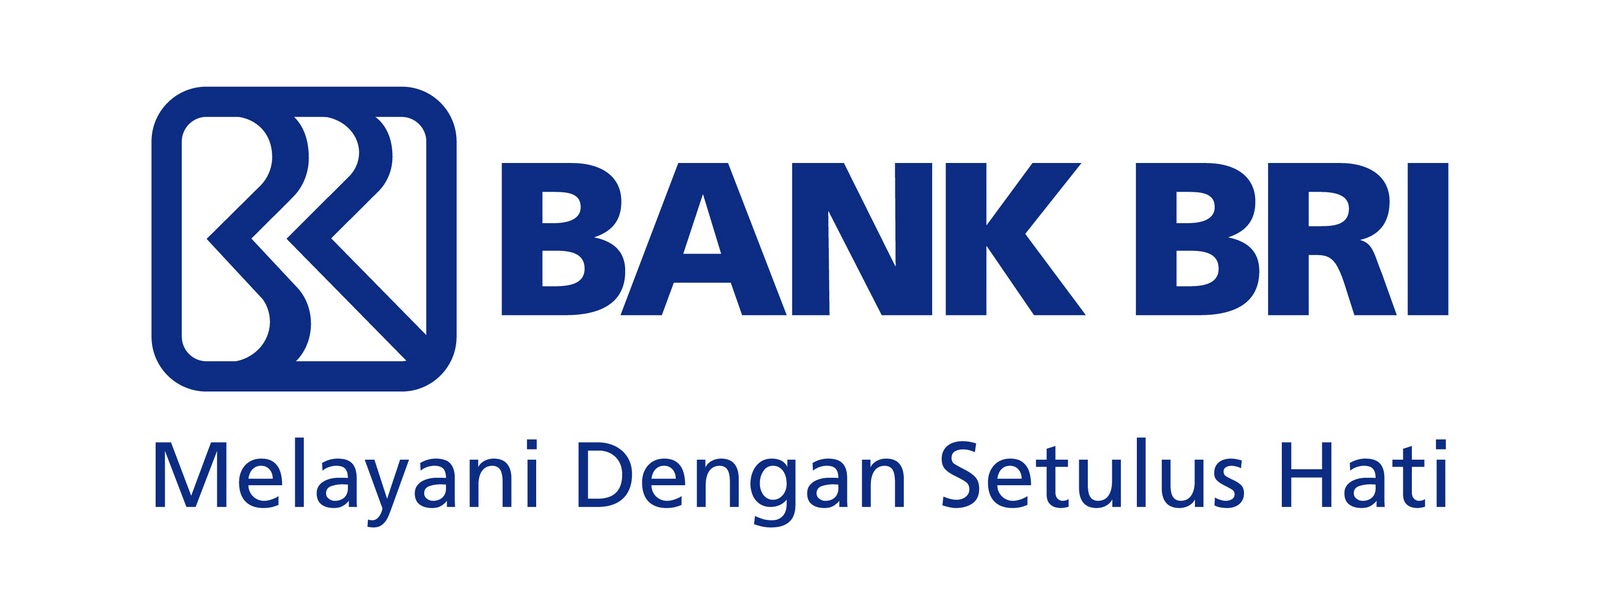 Lowongan Kerja Paling Baru Bank BRI IndonesIa 2016